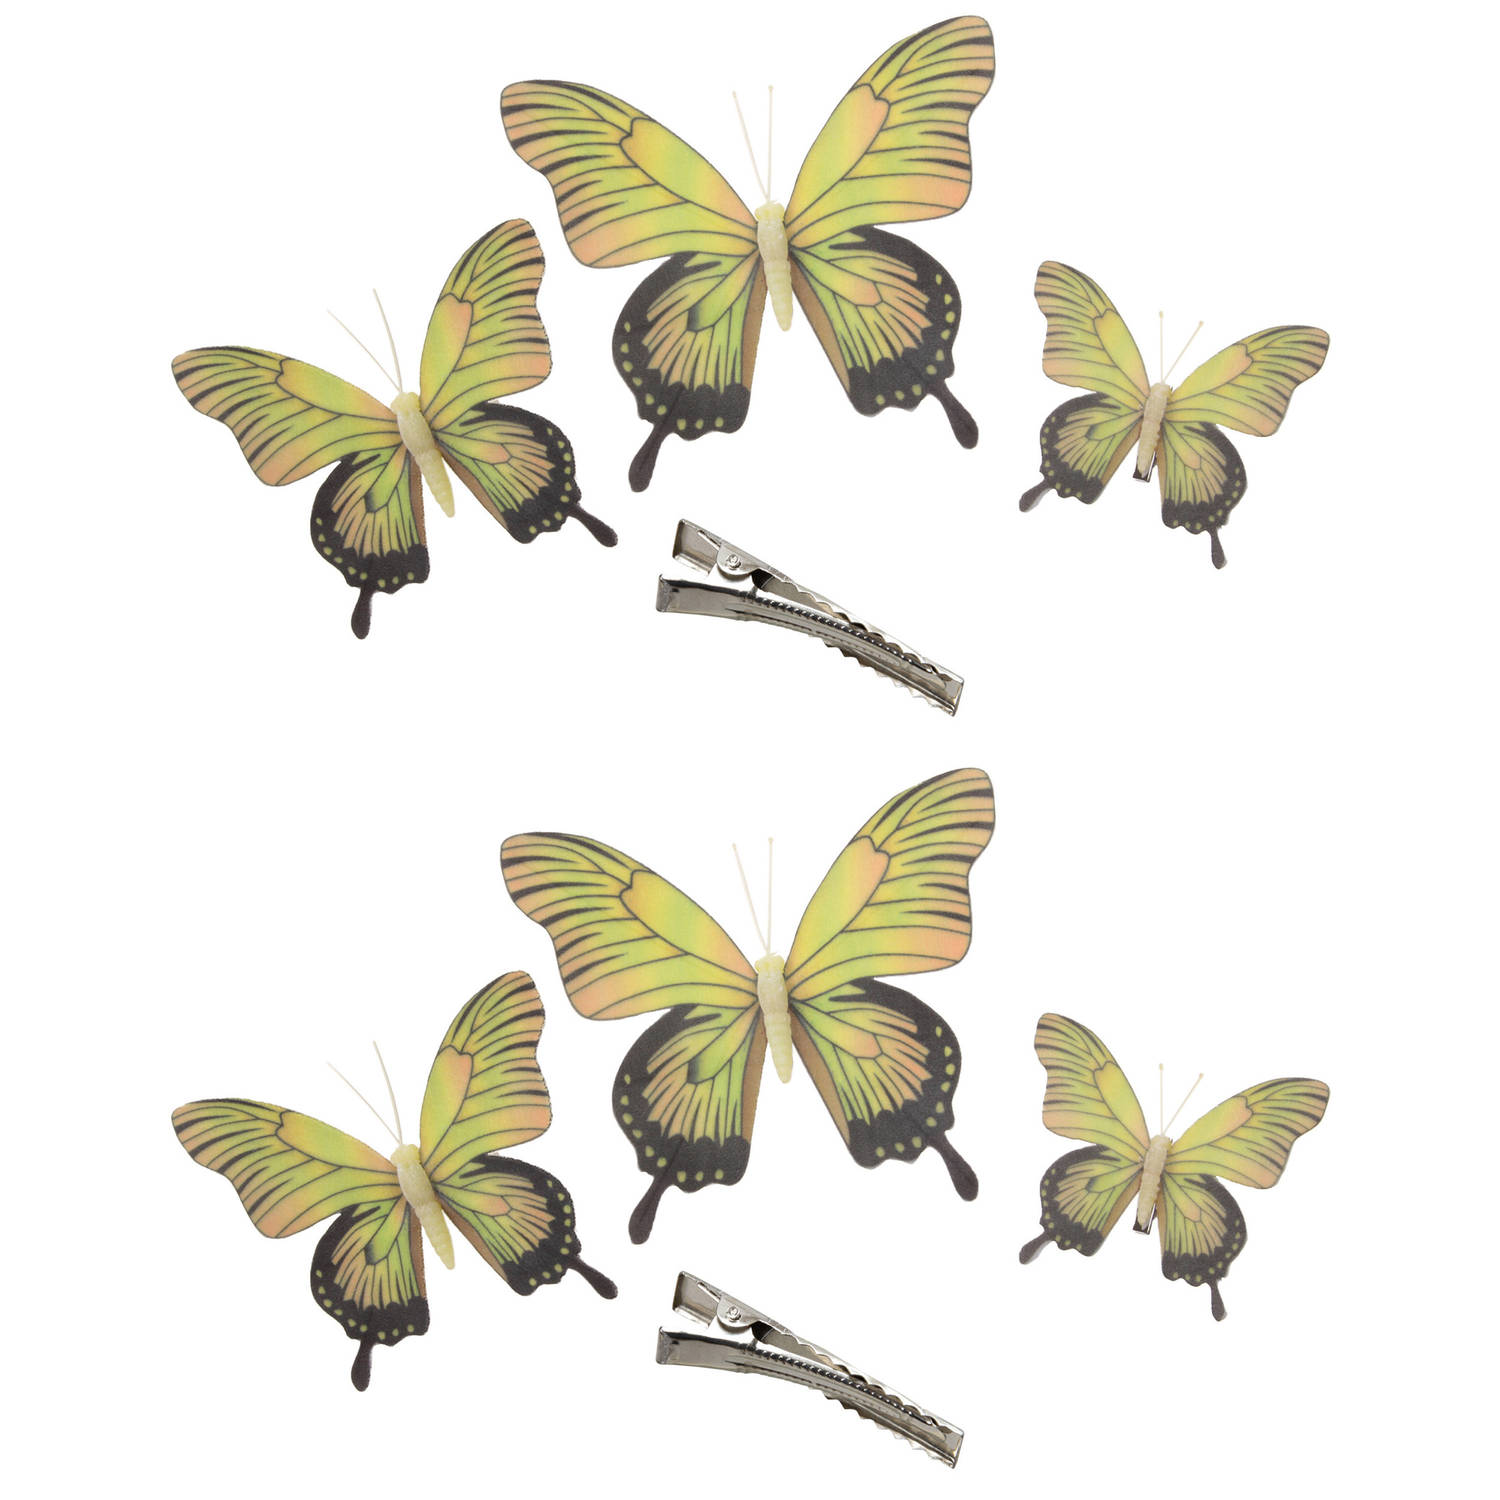 6x Stuks Decoratie Vlinders Op Clip Geel 3 Formaten 12-16-20 Cm Hobbydecoratieobject